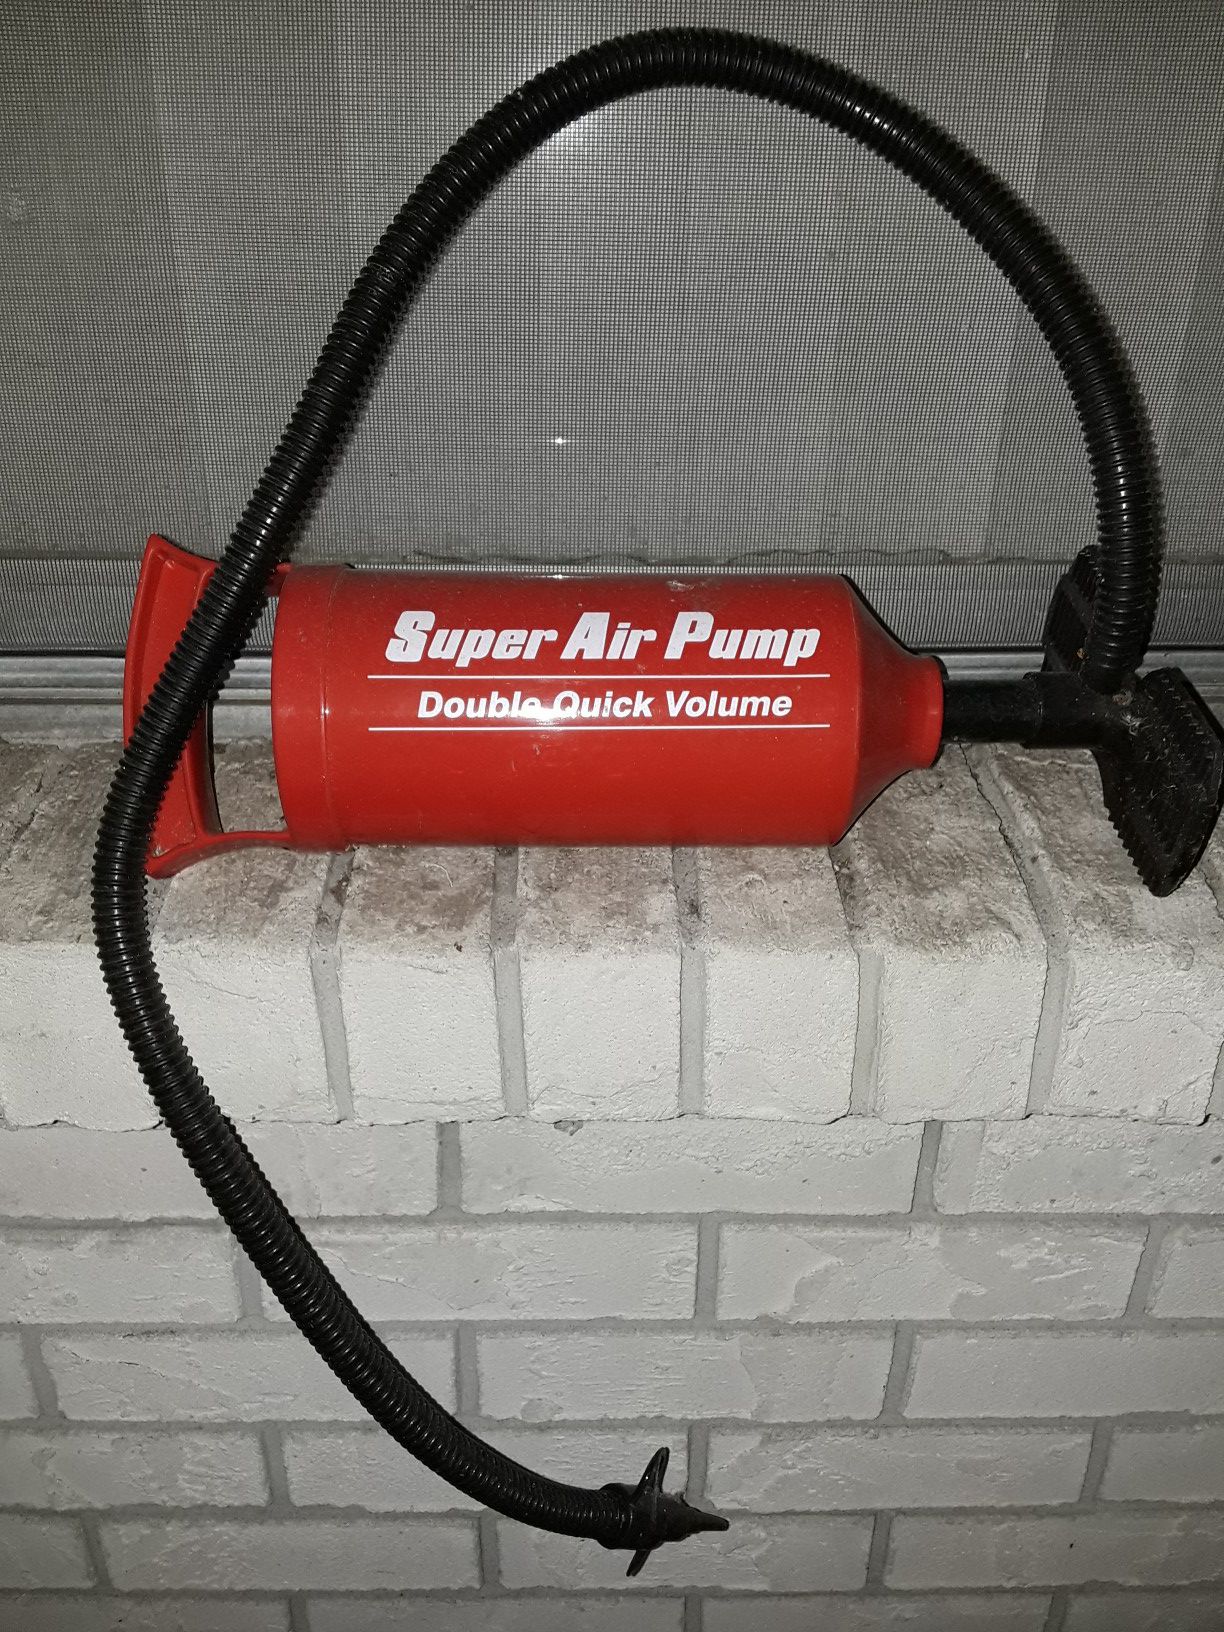 air pump